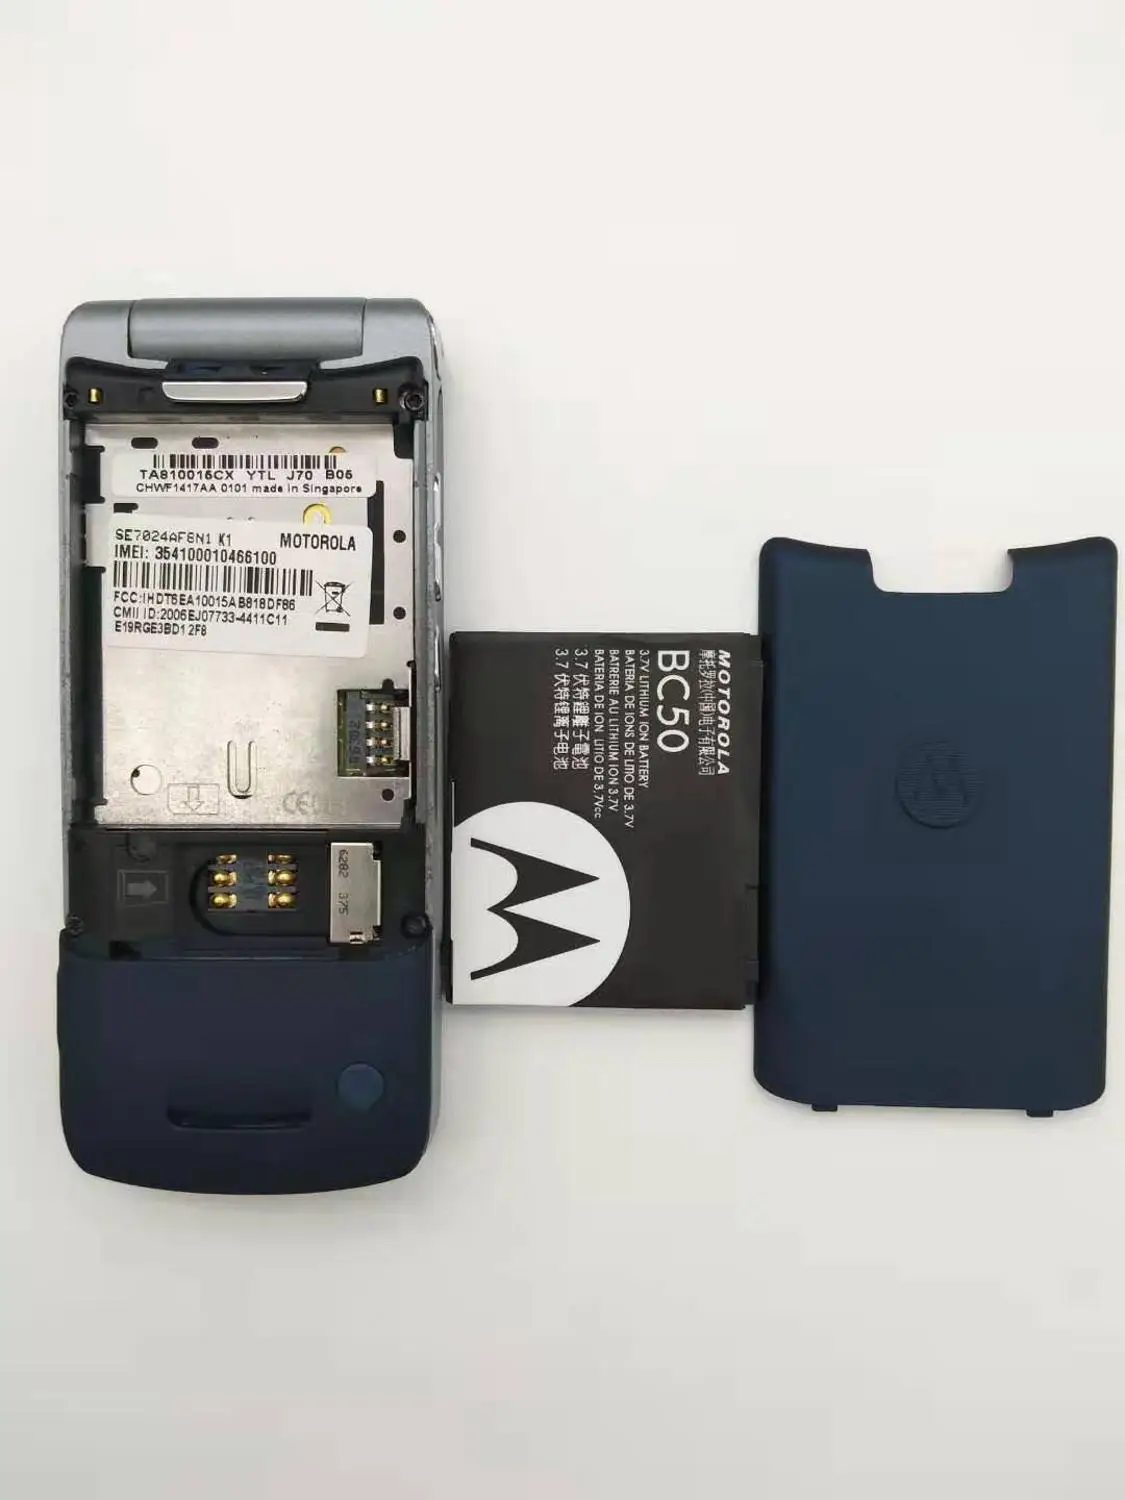 Motorola Krzr K1 Flip Восстановленный Оригинальный разблокированный GSM MP3 FM радио Телефон